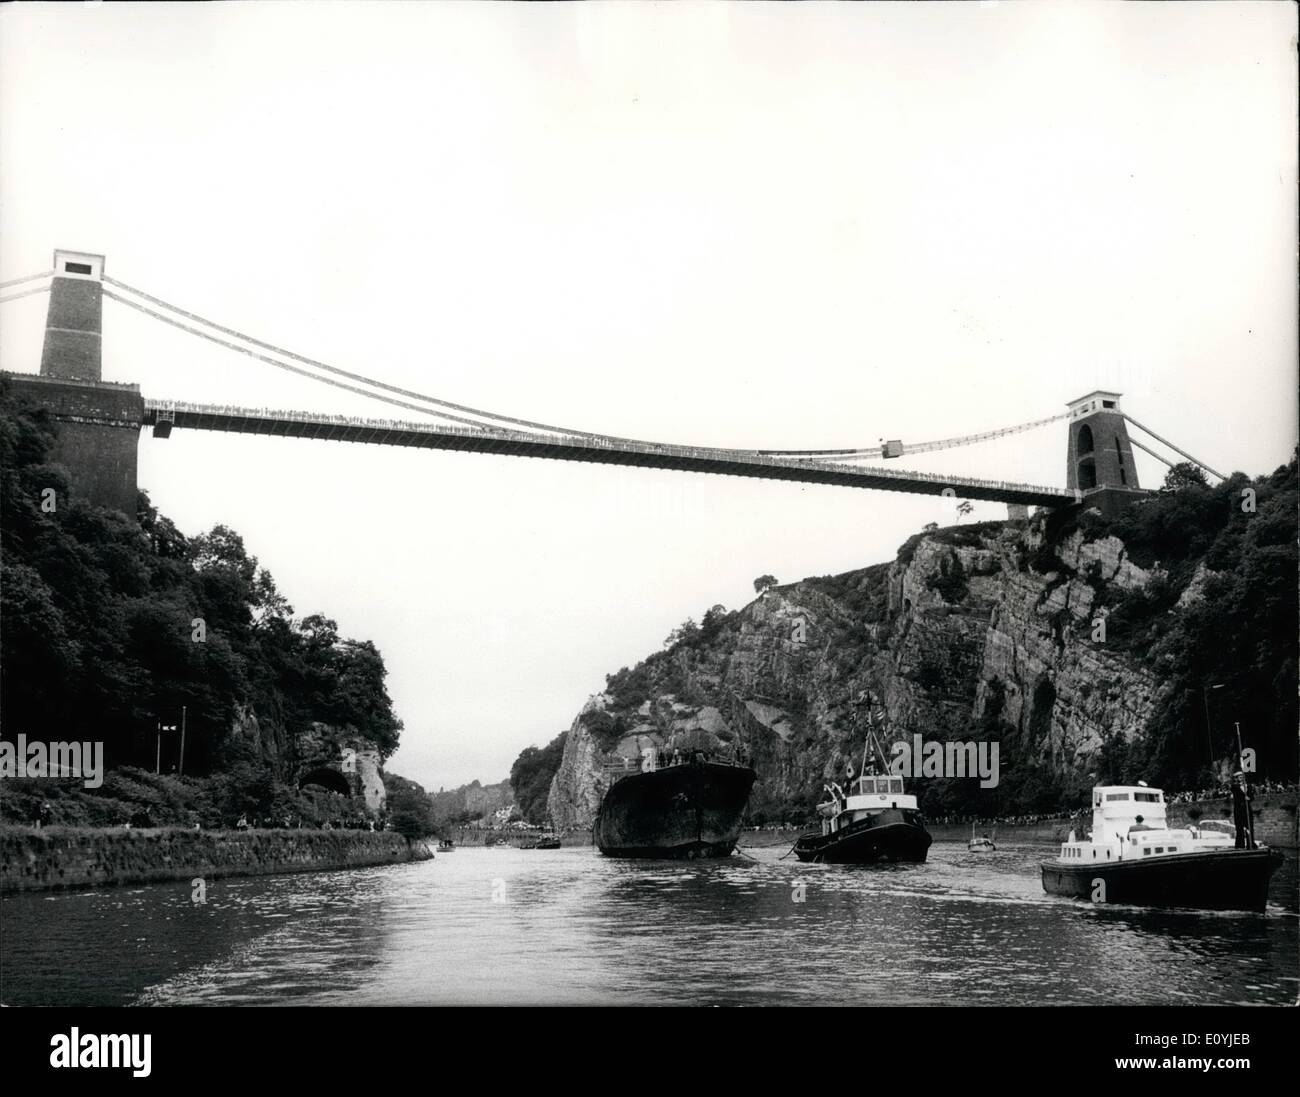 7. Juli 1970 - Schiff Brunels S.S Großbritannien kommt in Bristol.: Brunel Eisen liefern die S.S Großbritannien, in Bristol ist gestern angekommen, am Ende ihr Schlepptau von 8.000 Meilen von den Falkland-Inseln. Mehr als 100.000 Fahnenschwingen Menschen beobachtete, wie die überdachte die acht Meilen von der gewundenen Fluss Avon aus Avonmouth zu Bristol Docks, wo sie vor 127 Jahren ins Leben gerufen wurde. Arbeit auf ihre Wiederherstellung startet in zwei Wochen. Die SS Great Britain war der weltweit erste Ozean gehen Propeller angetrieben Eisen Schiff. Foto zeigt die Szene als die S.S Stockfoto